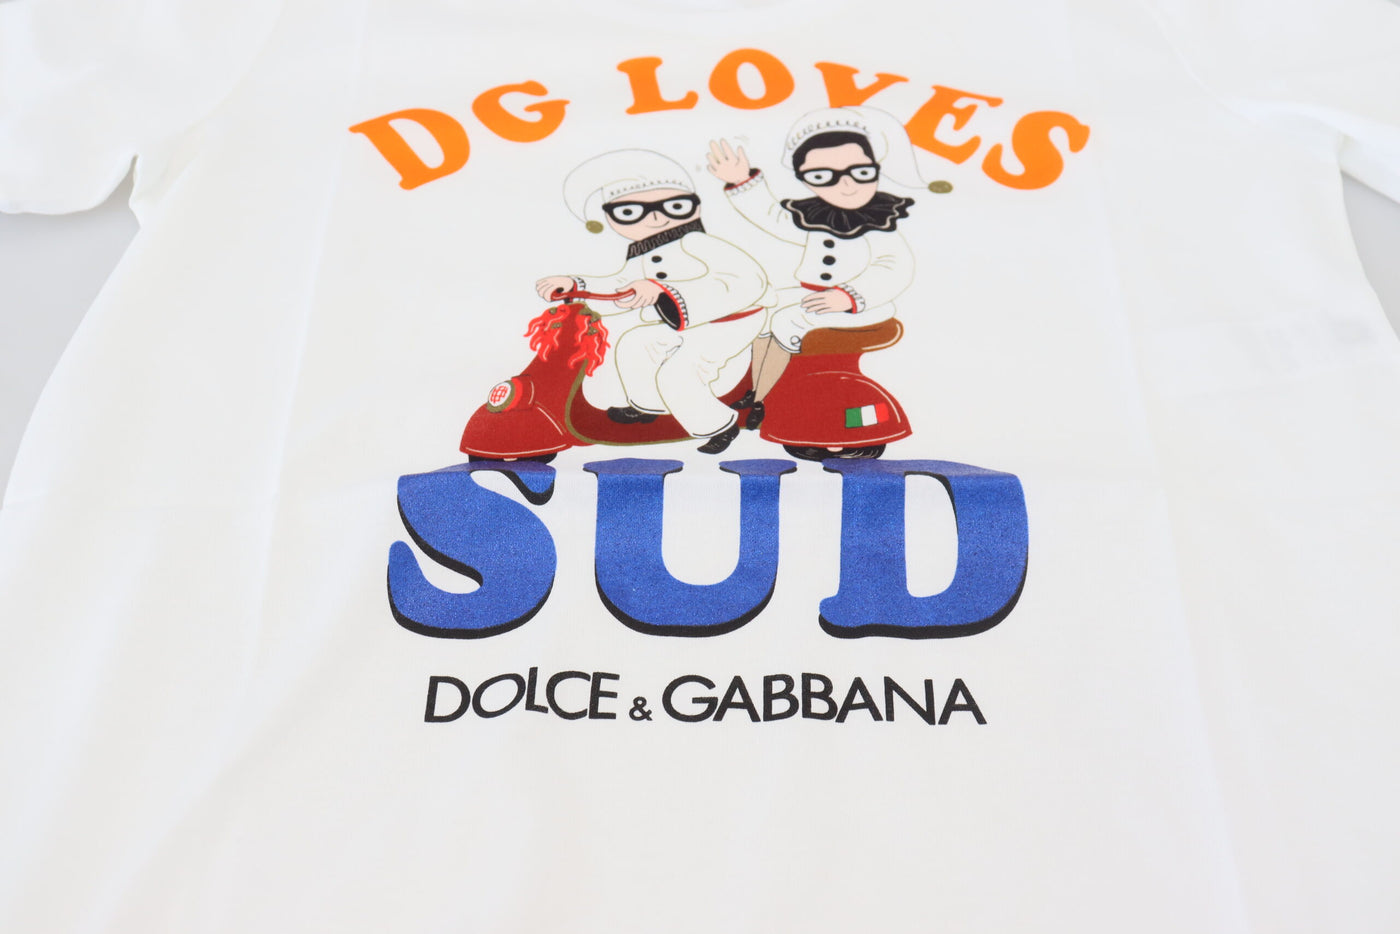 White Cotton DG Loves SUD  T-shirt